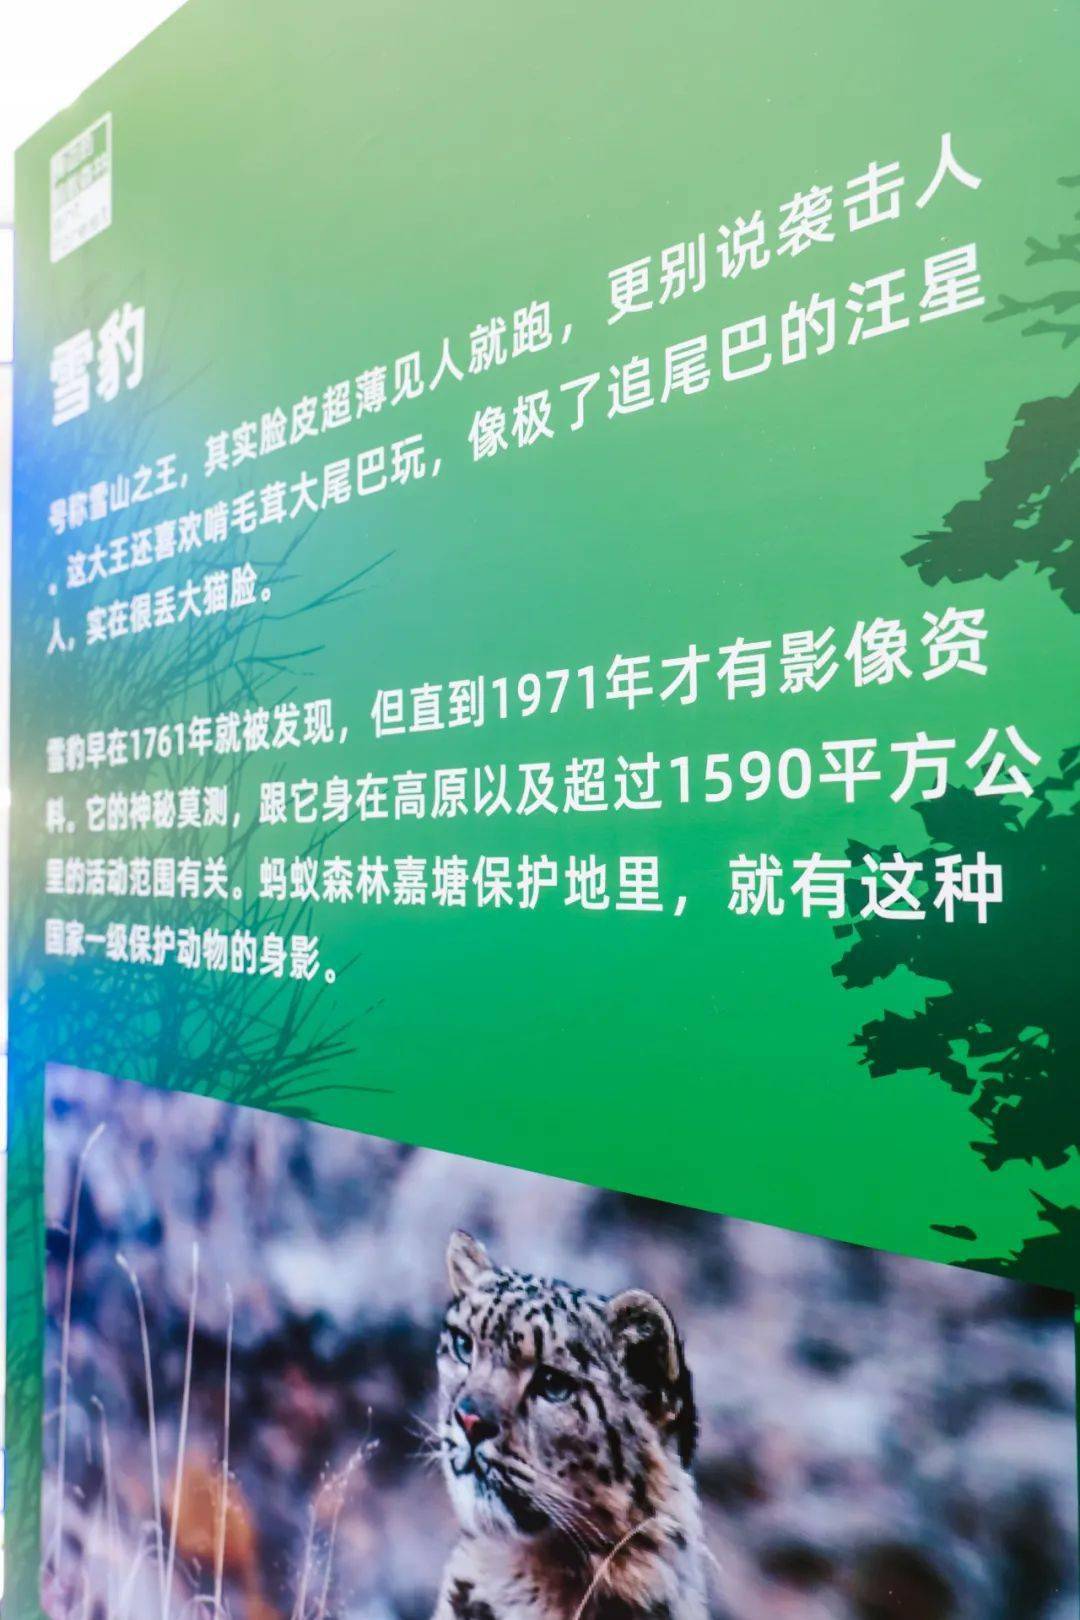 现实版蚂蚁森林空降上海,种树人不能错过的打卡点